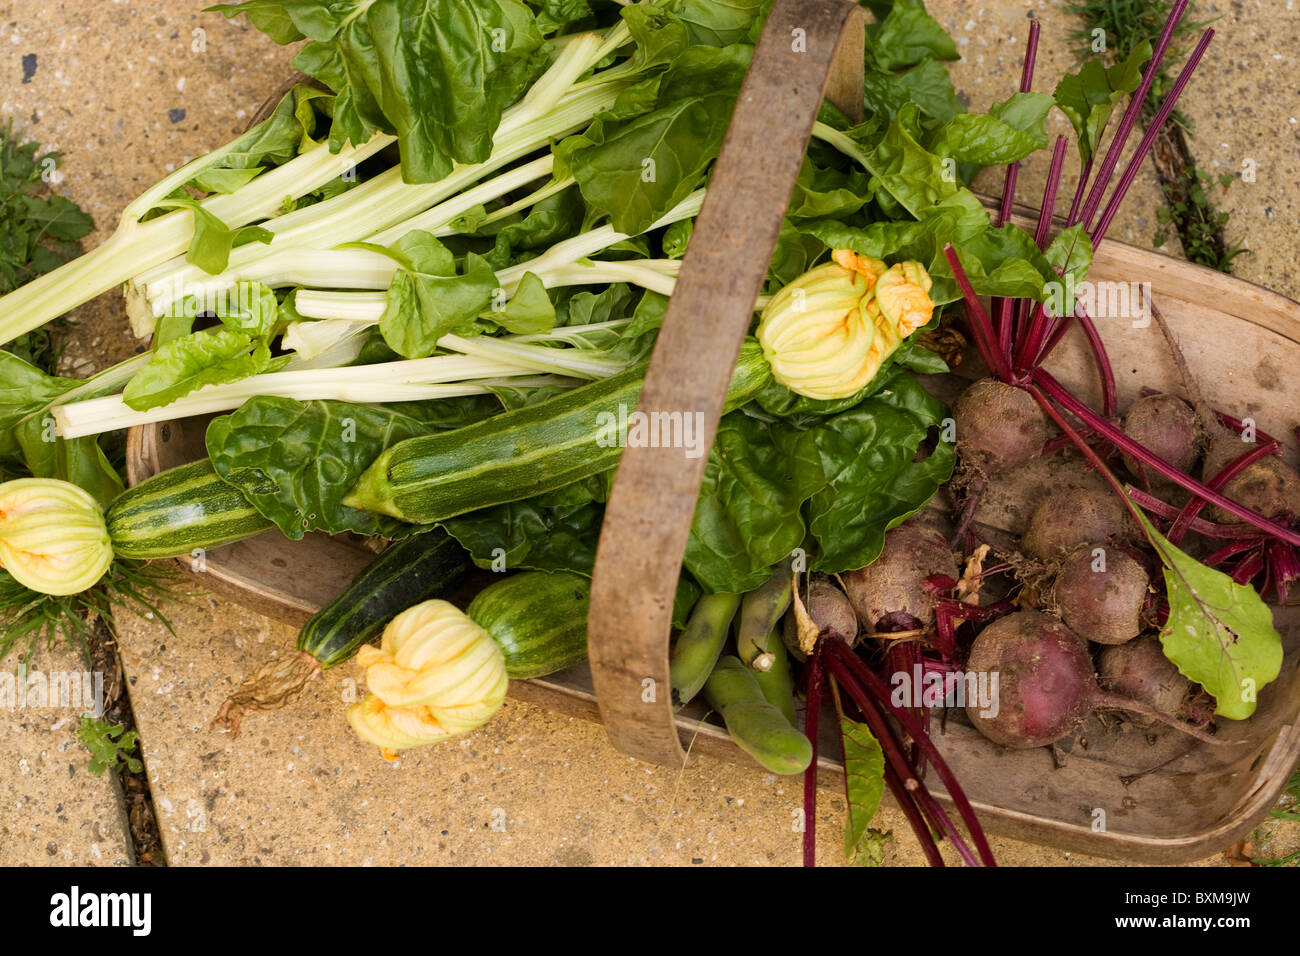 Trug der Frischwaren, Zucchini, rote Beete, Spinat, Mangold und Saubohnen Stockfoto